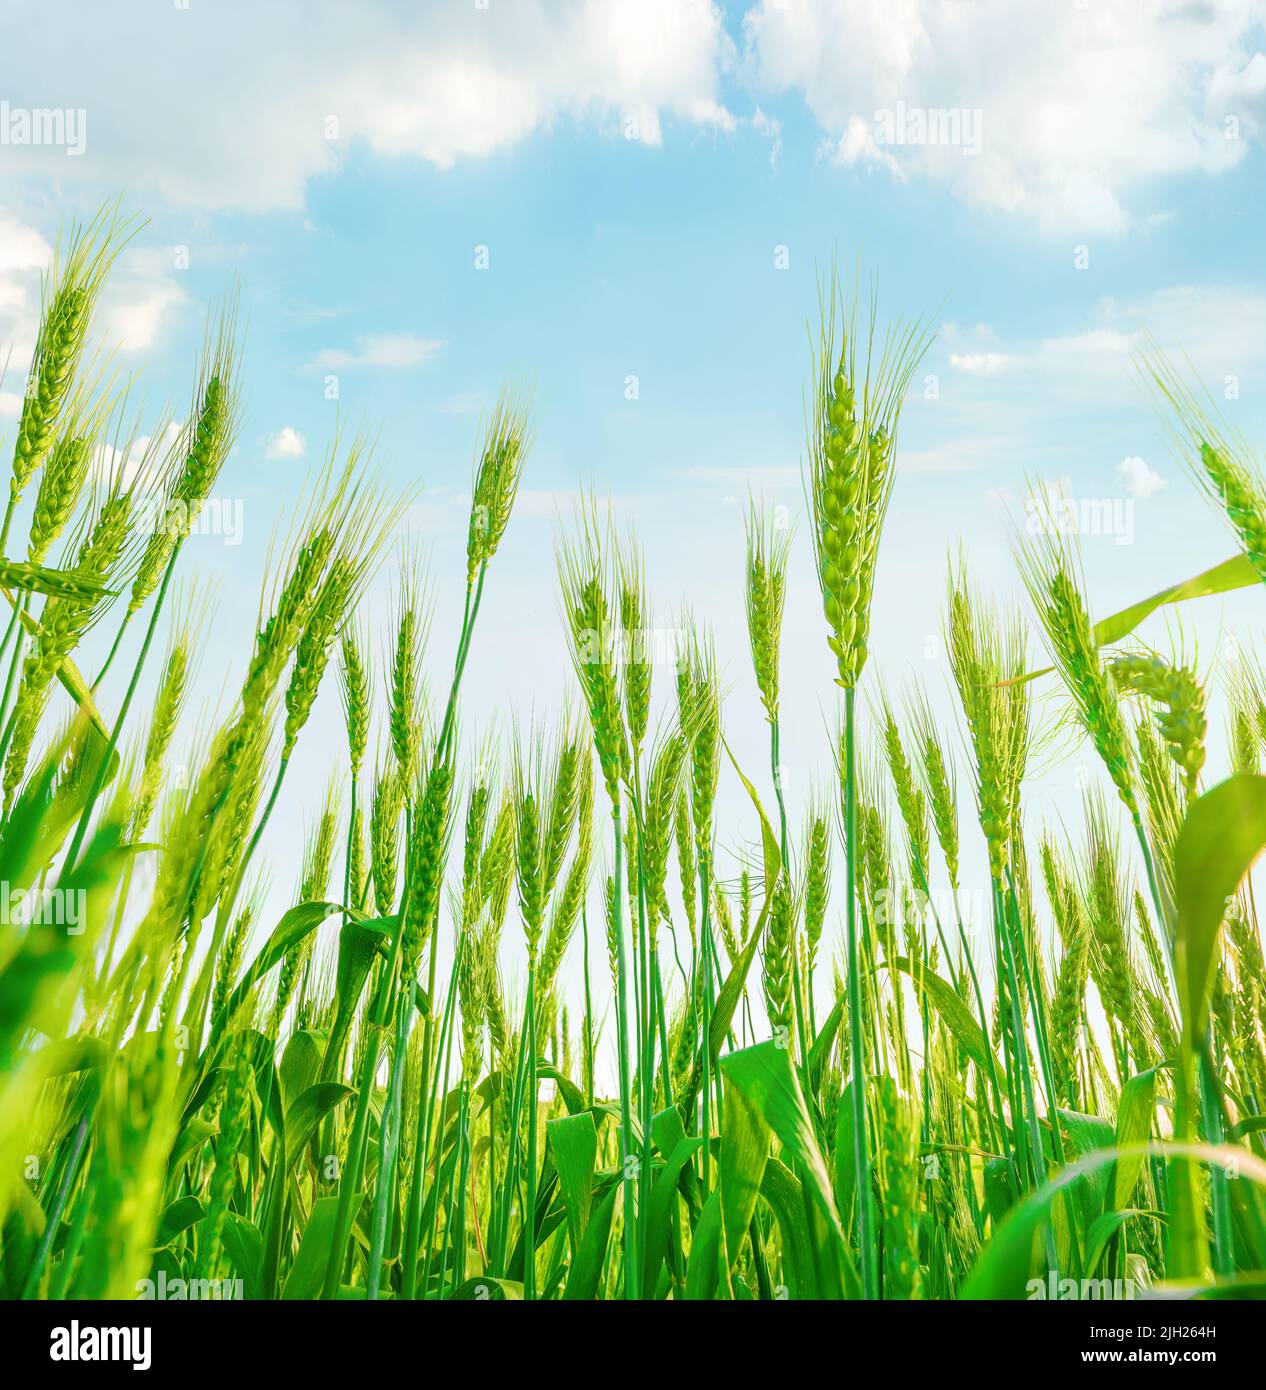 Las orejas de trigo verde que crecen en el campo. Vista sobre el cielo azul claro con nubes Foto de stock